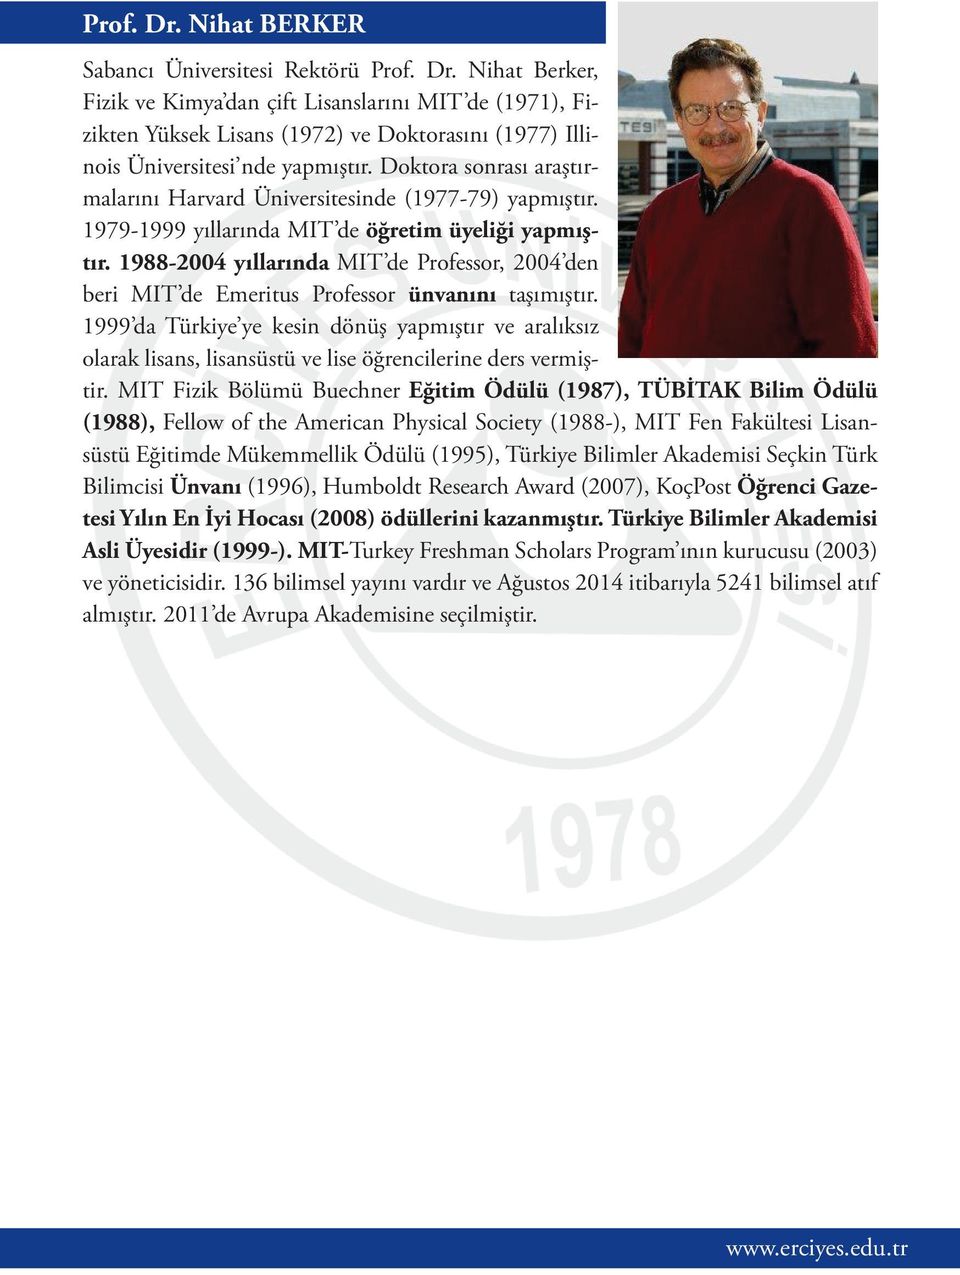 1988-2004 yıllarında MIT de Professor, 2004 den beri MIT de Emeritus Professor ünvanını taşımıştır.